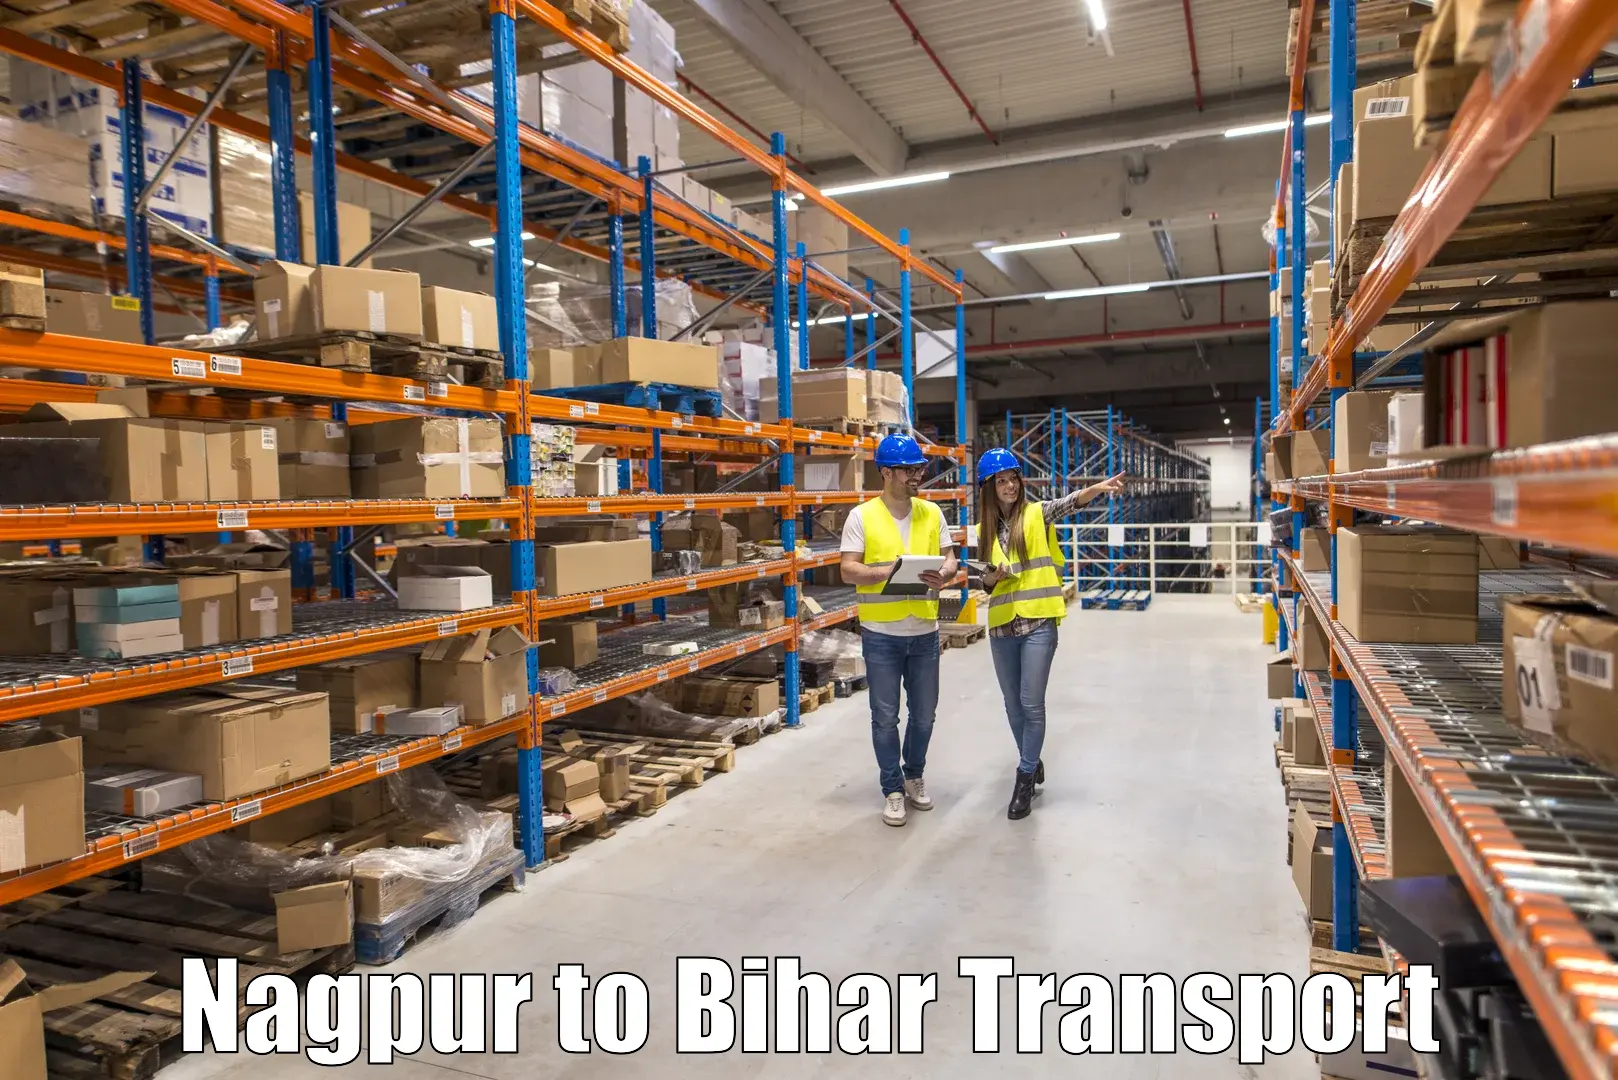 Container transport service Nagpur to Manihari